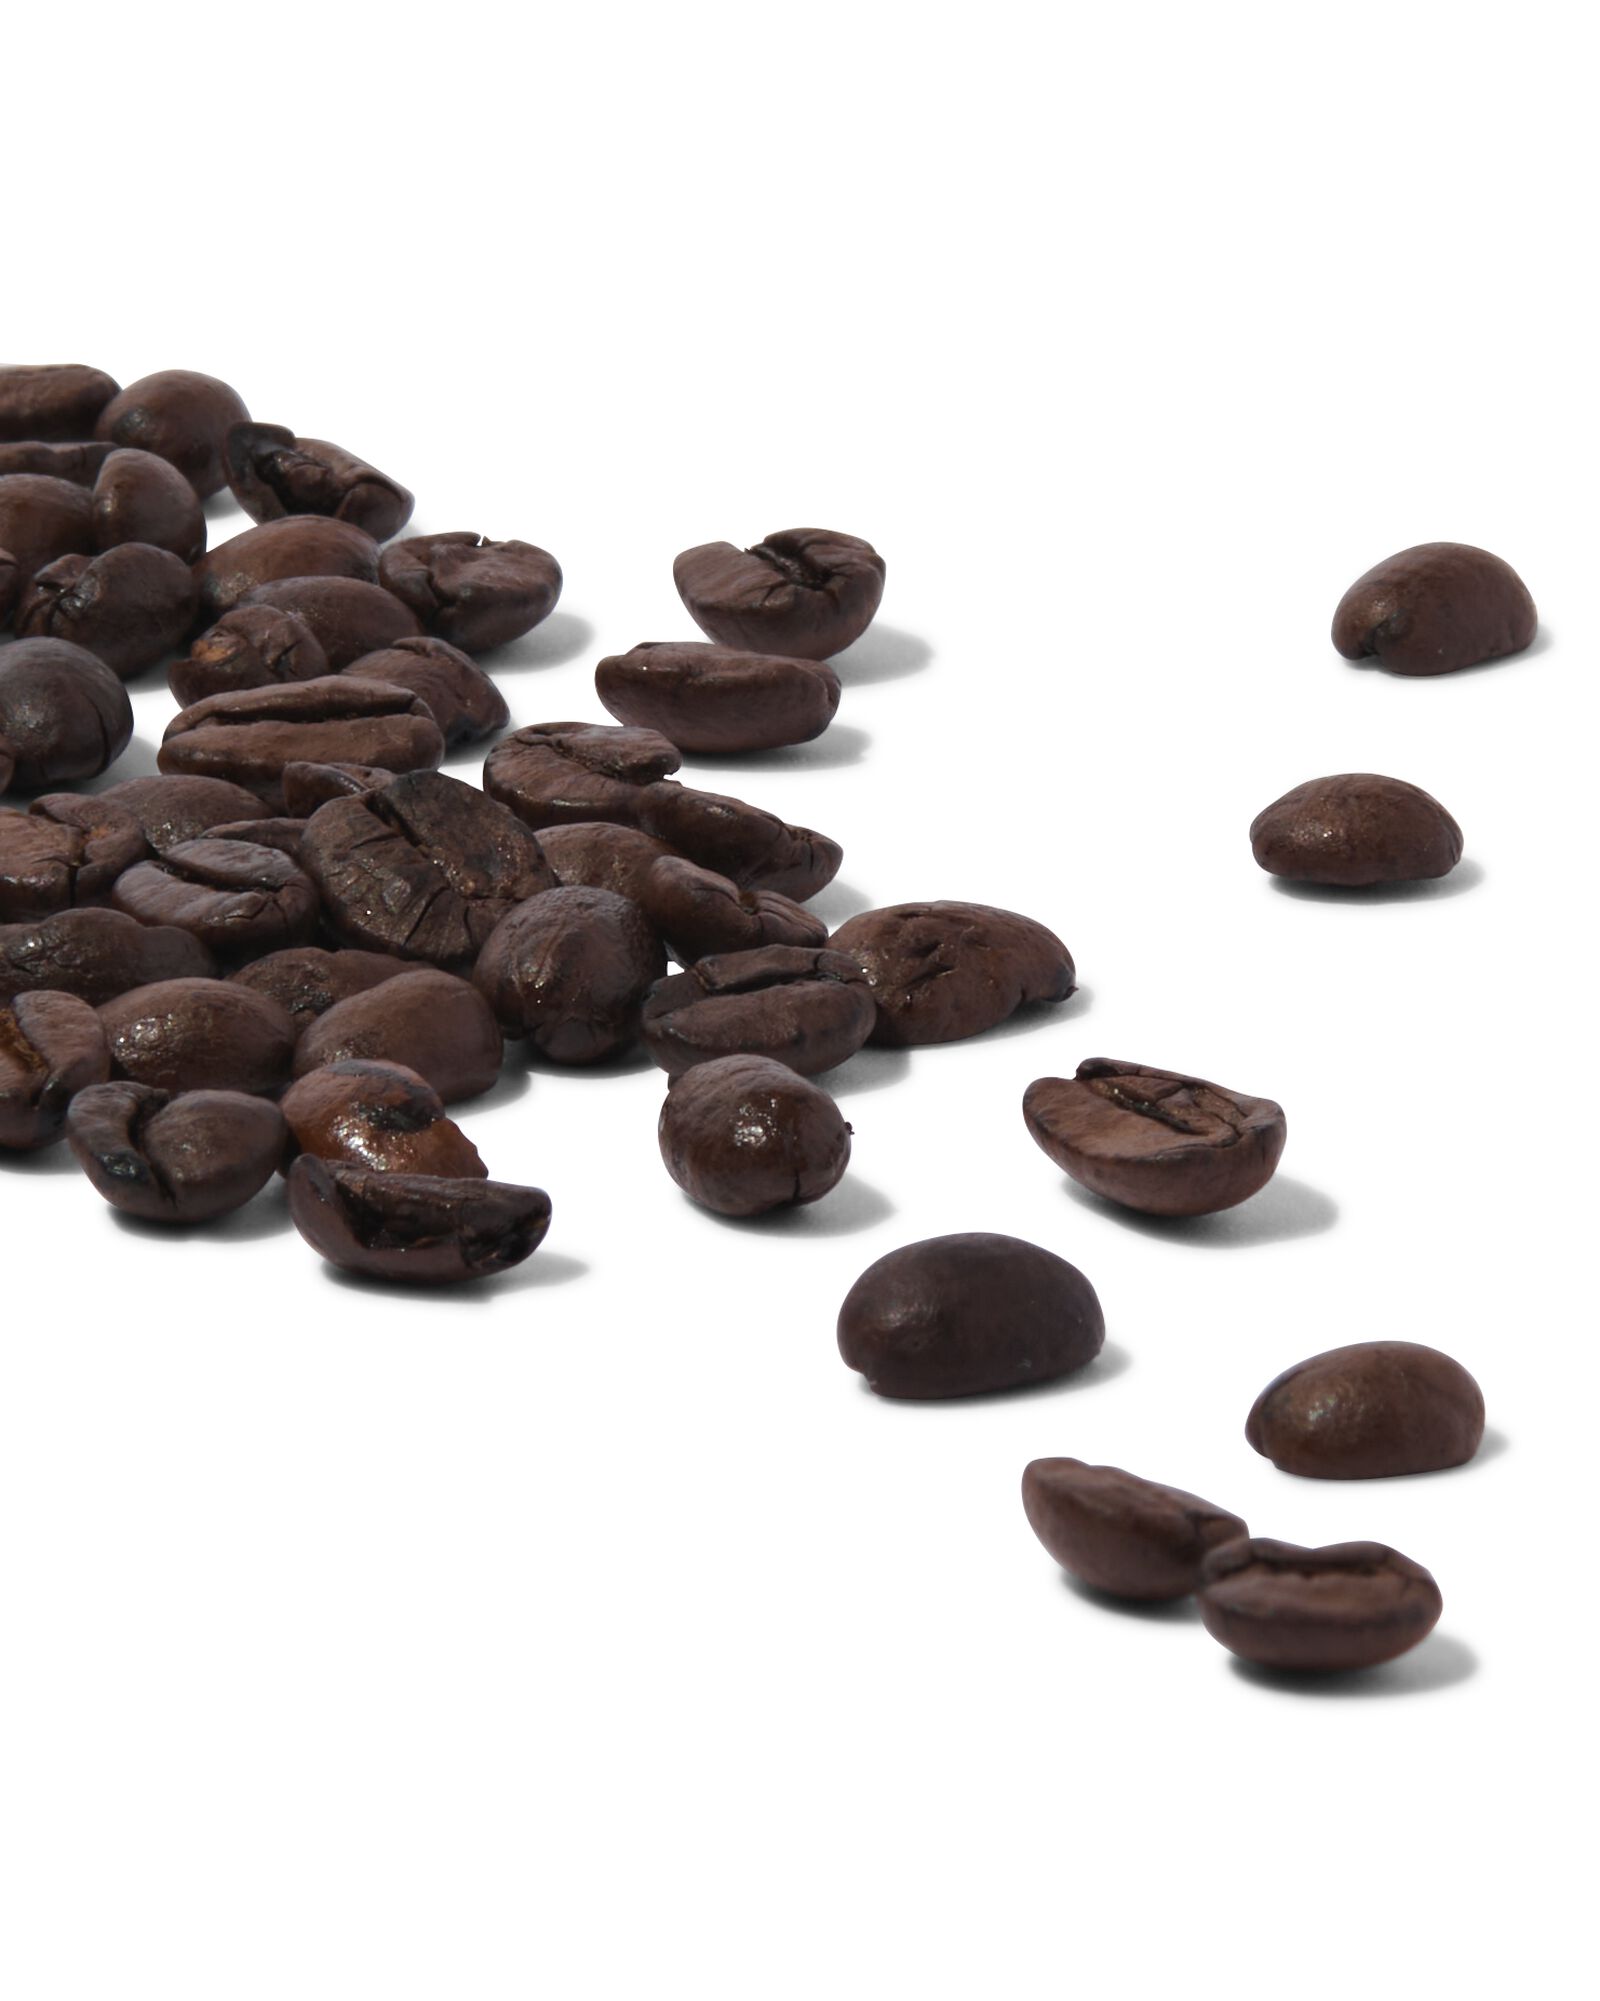 café en grains regular 1000g - 17160001 - HEMA